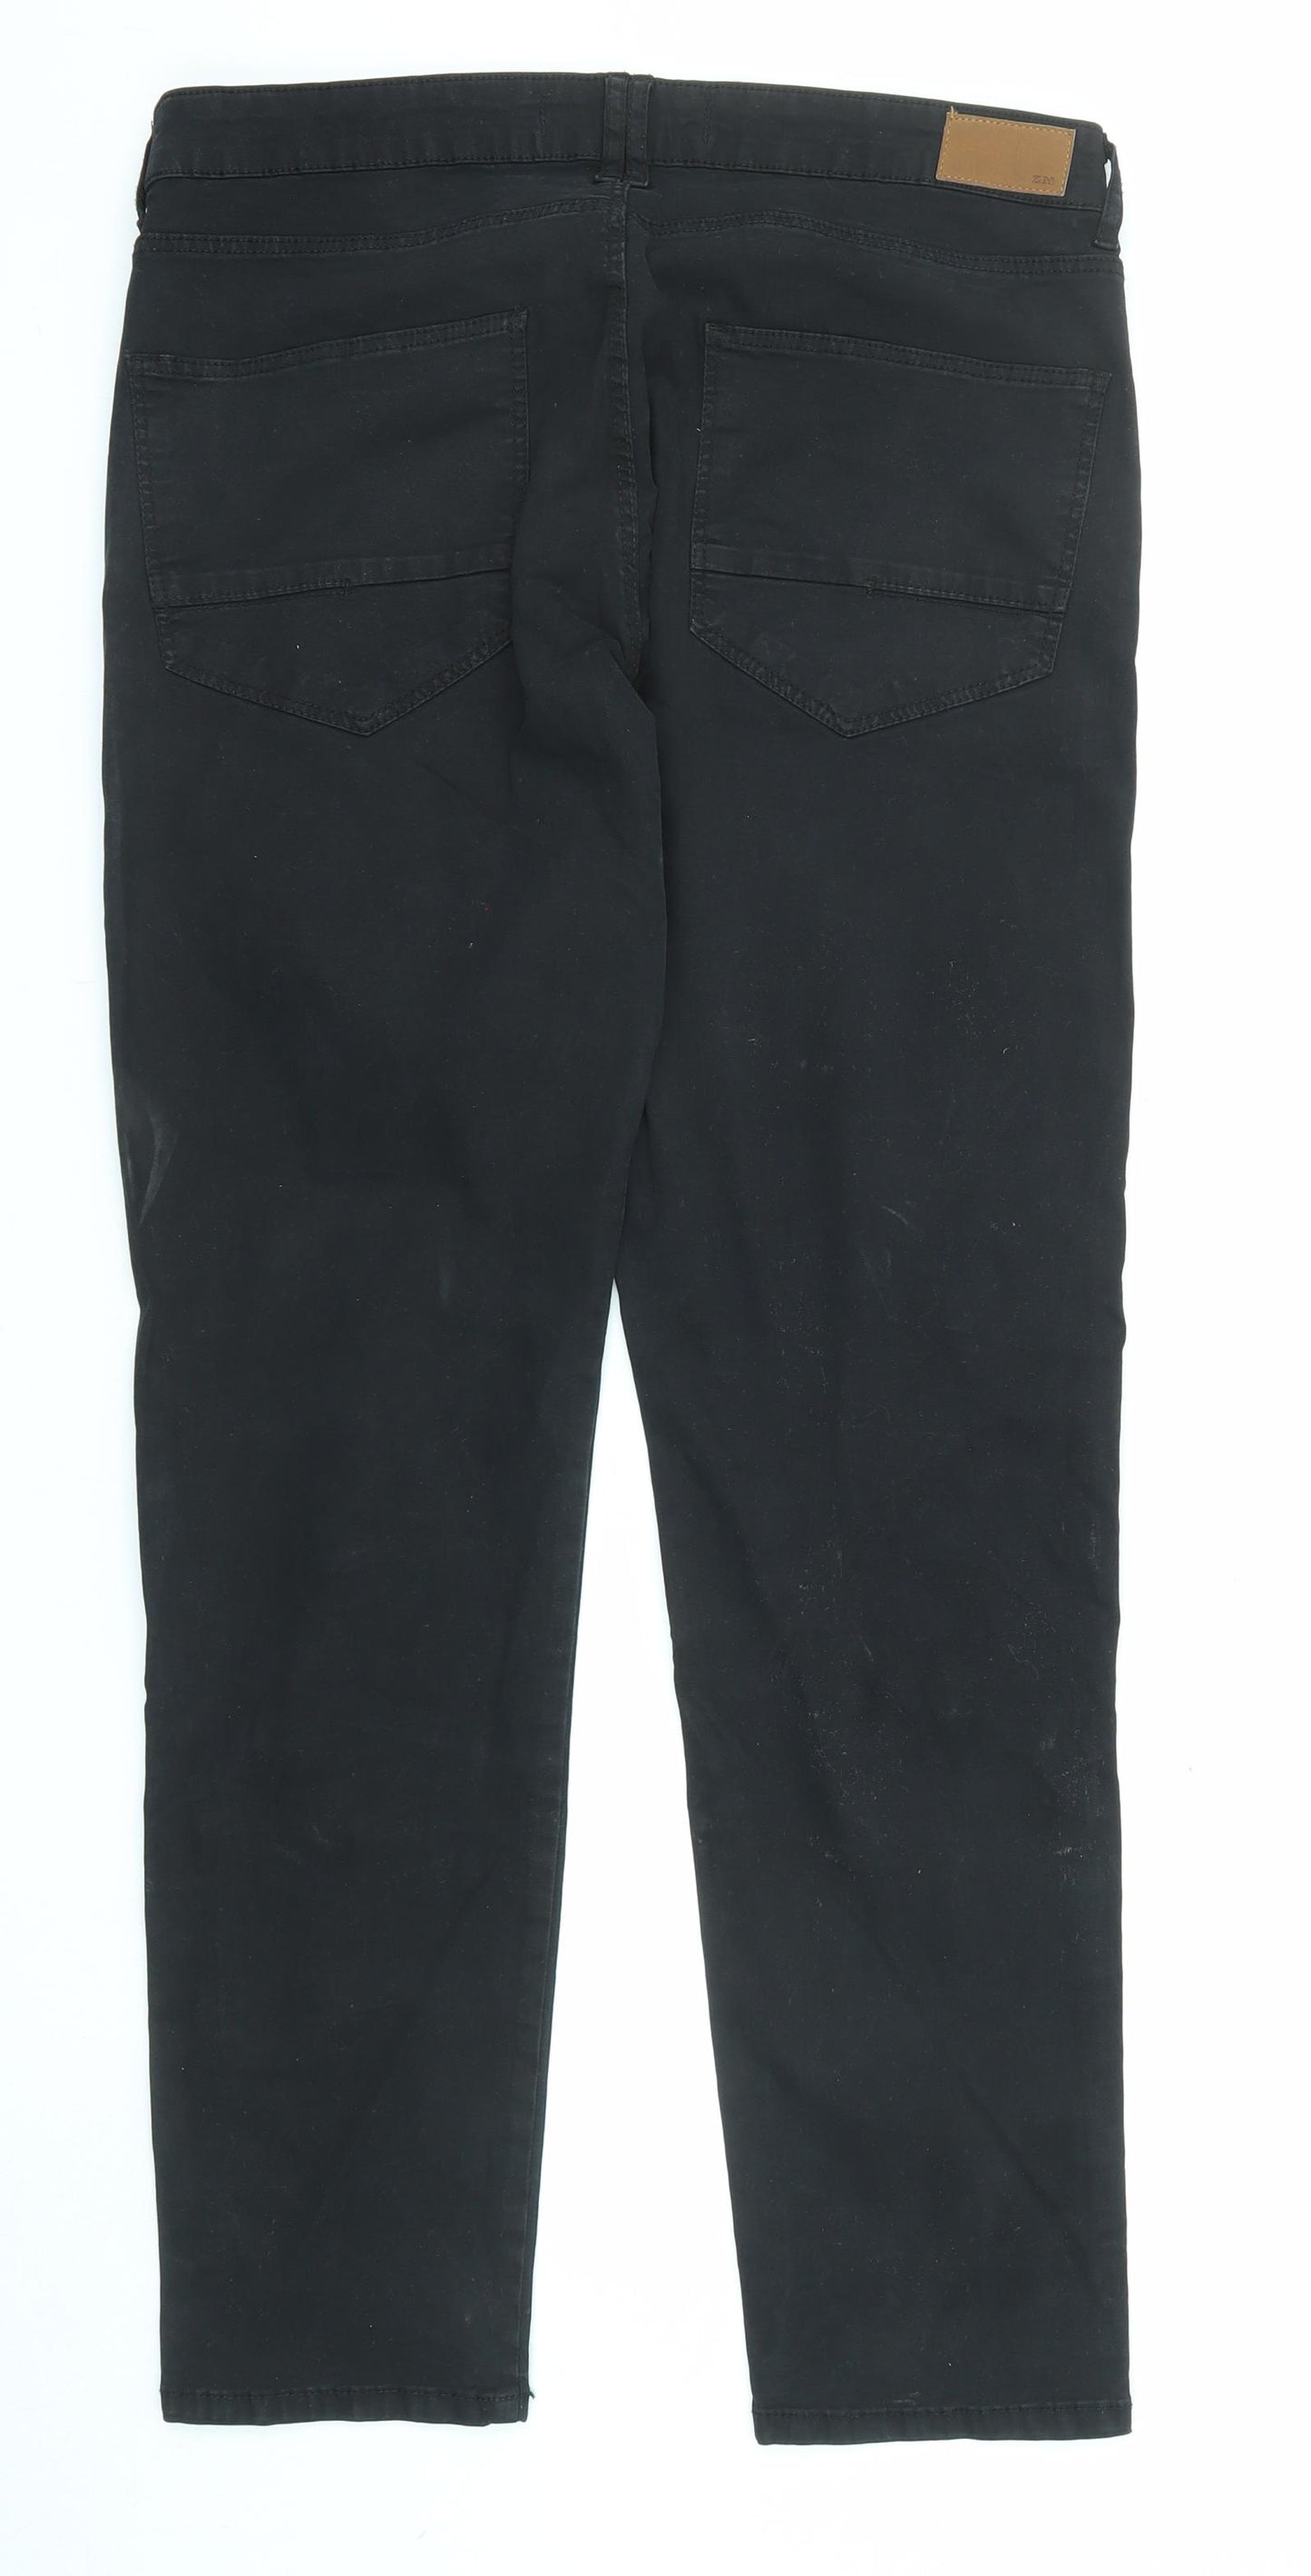 Zara Mens Black Cotton Skinny Jeans Size 34 in L31 in Regular Zip